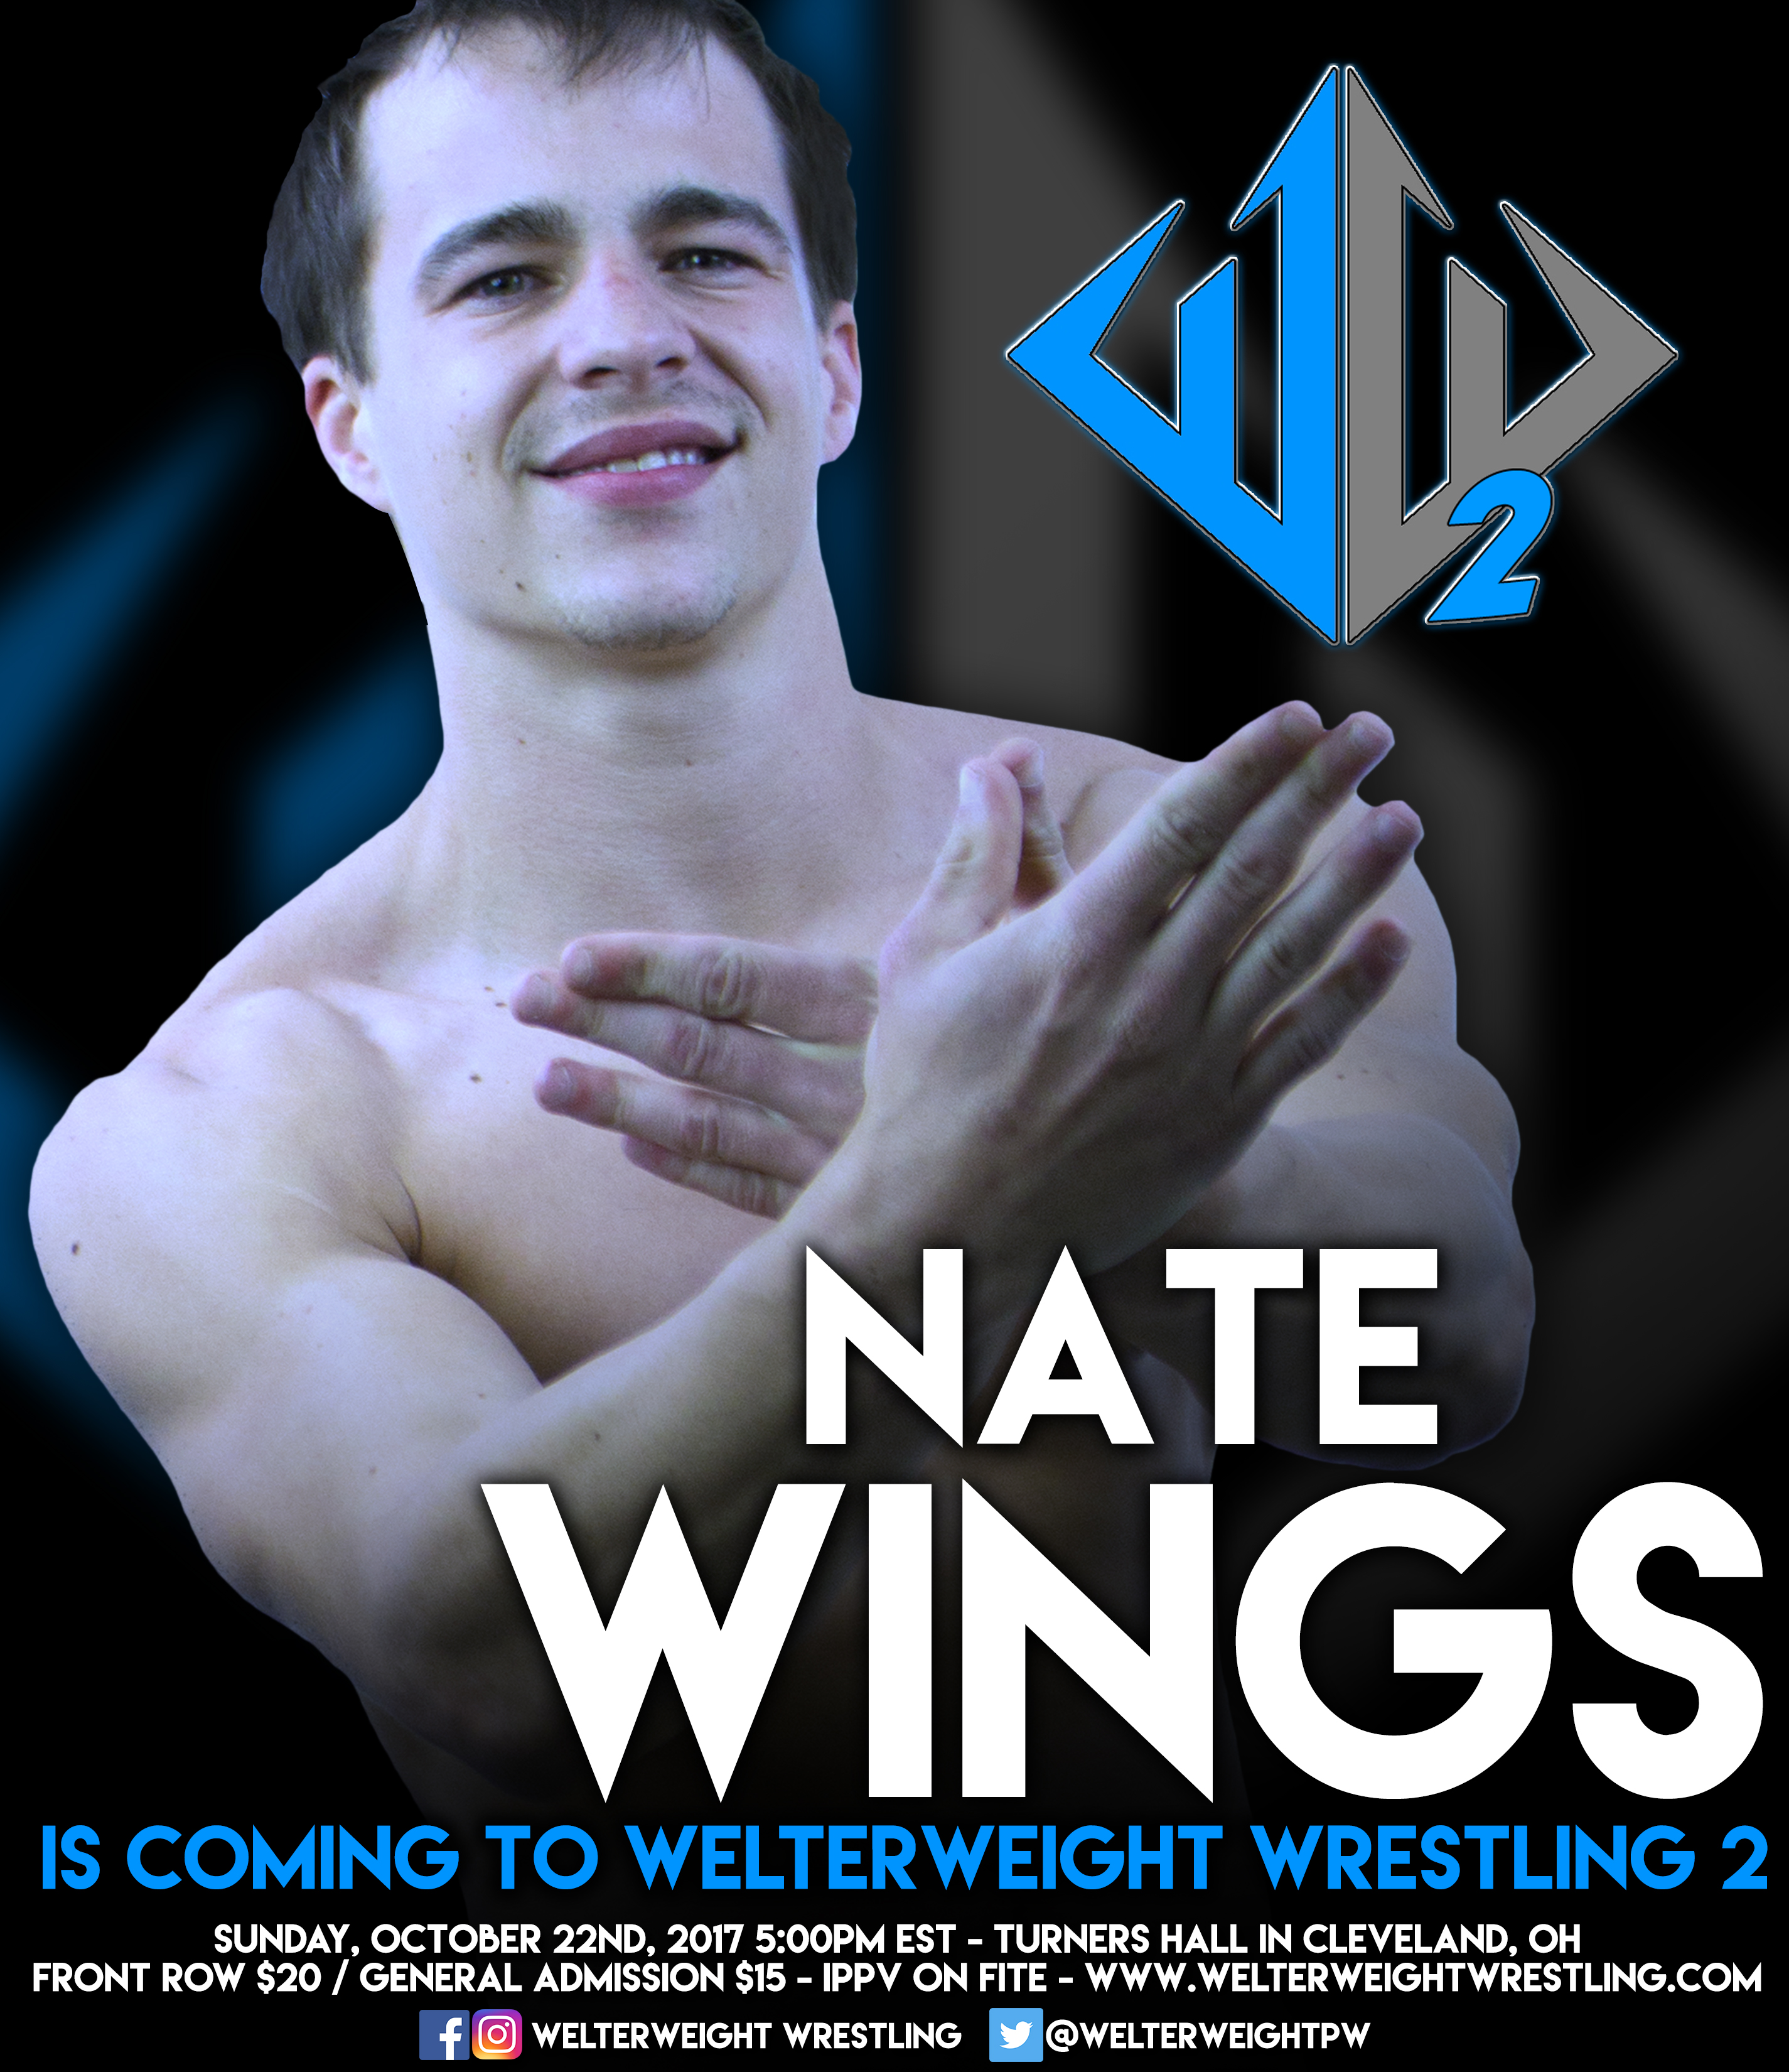 Nate Wings